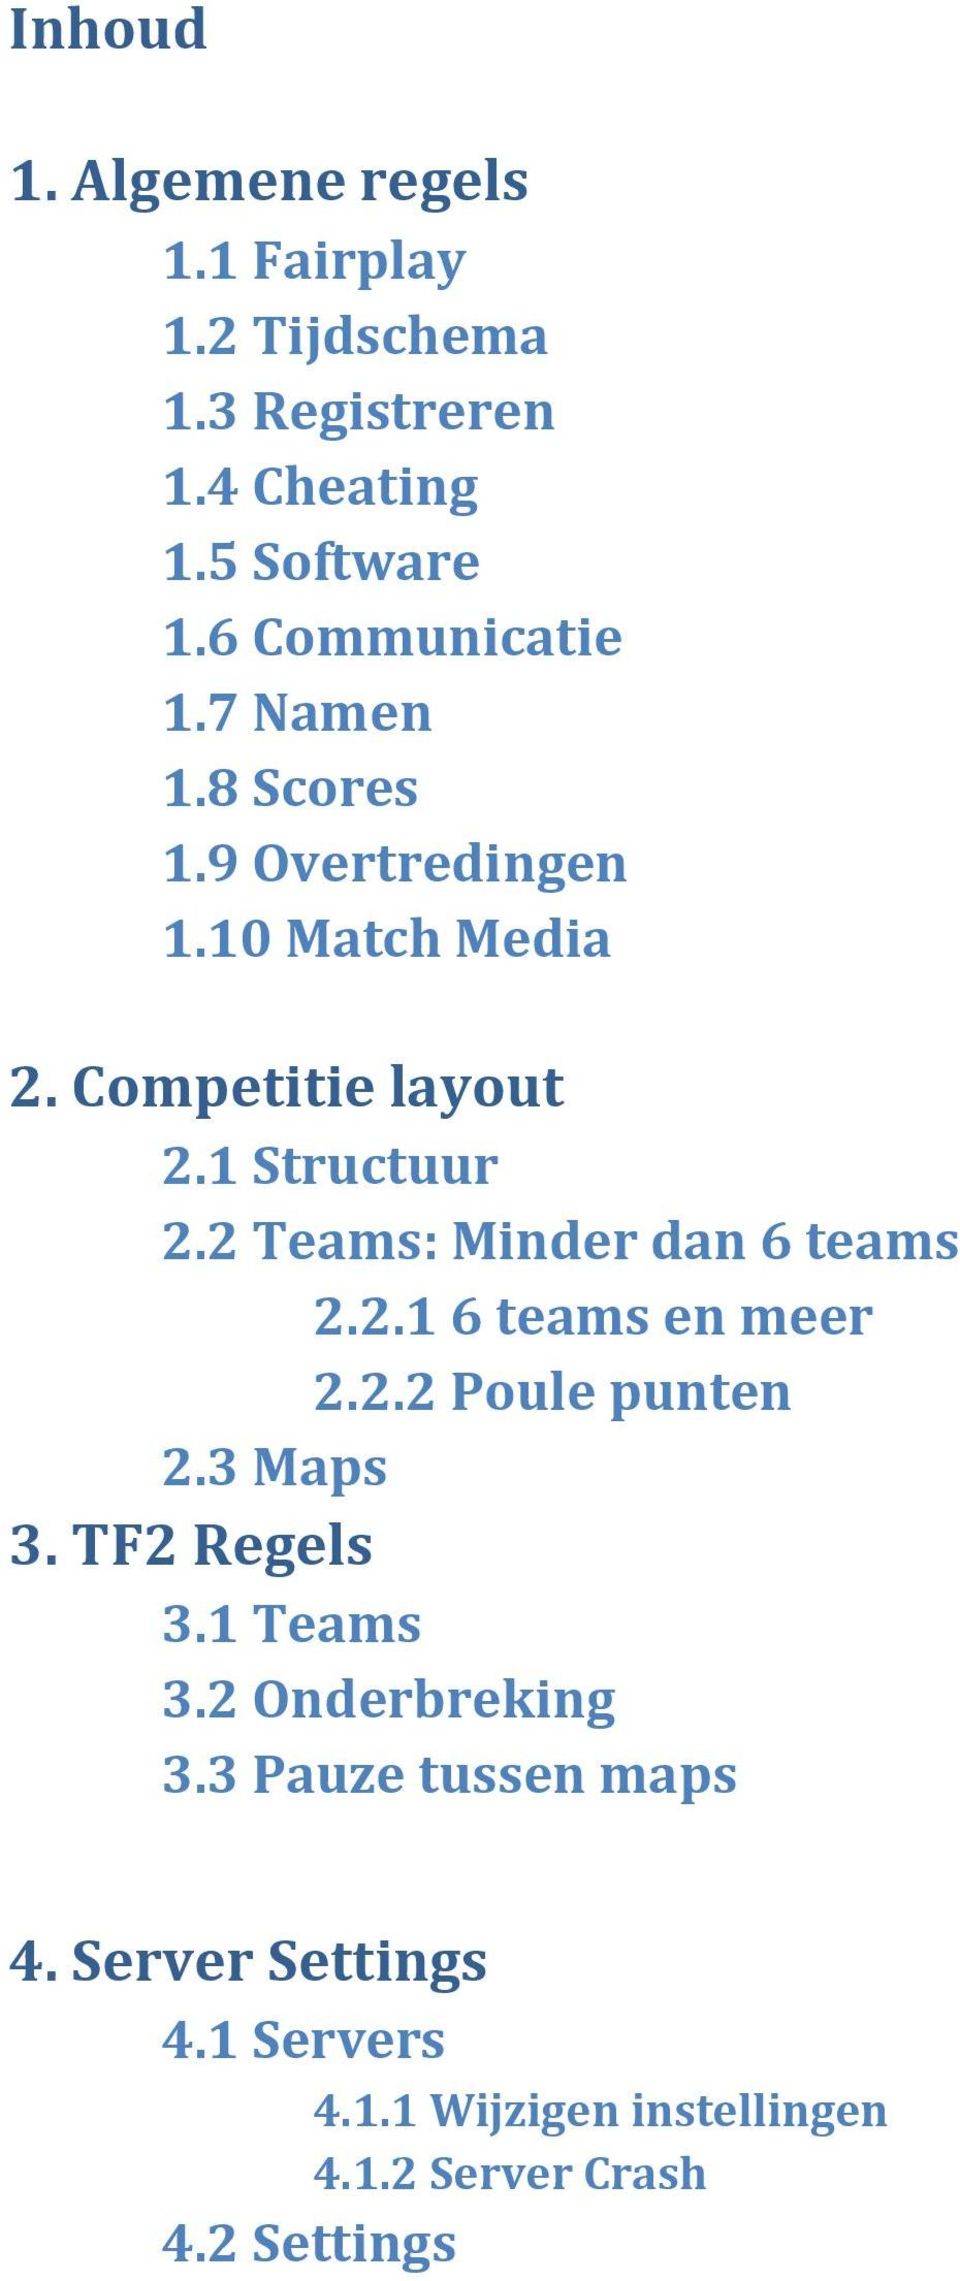 2 Teams: Minder dan 6 teams 2.2.1 6 teams en meer 2.2.2 Poule punten 2.3 Maps 3. TF2 Regels 3.1 Teams 3.